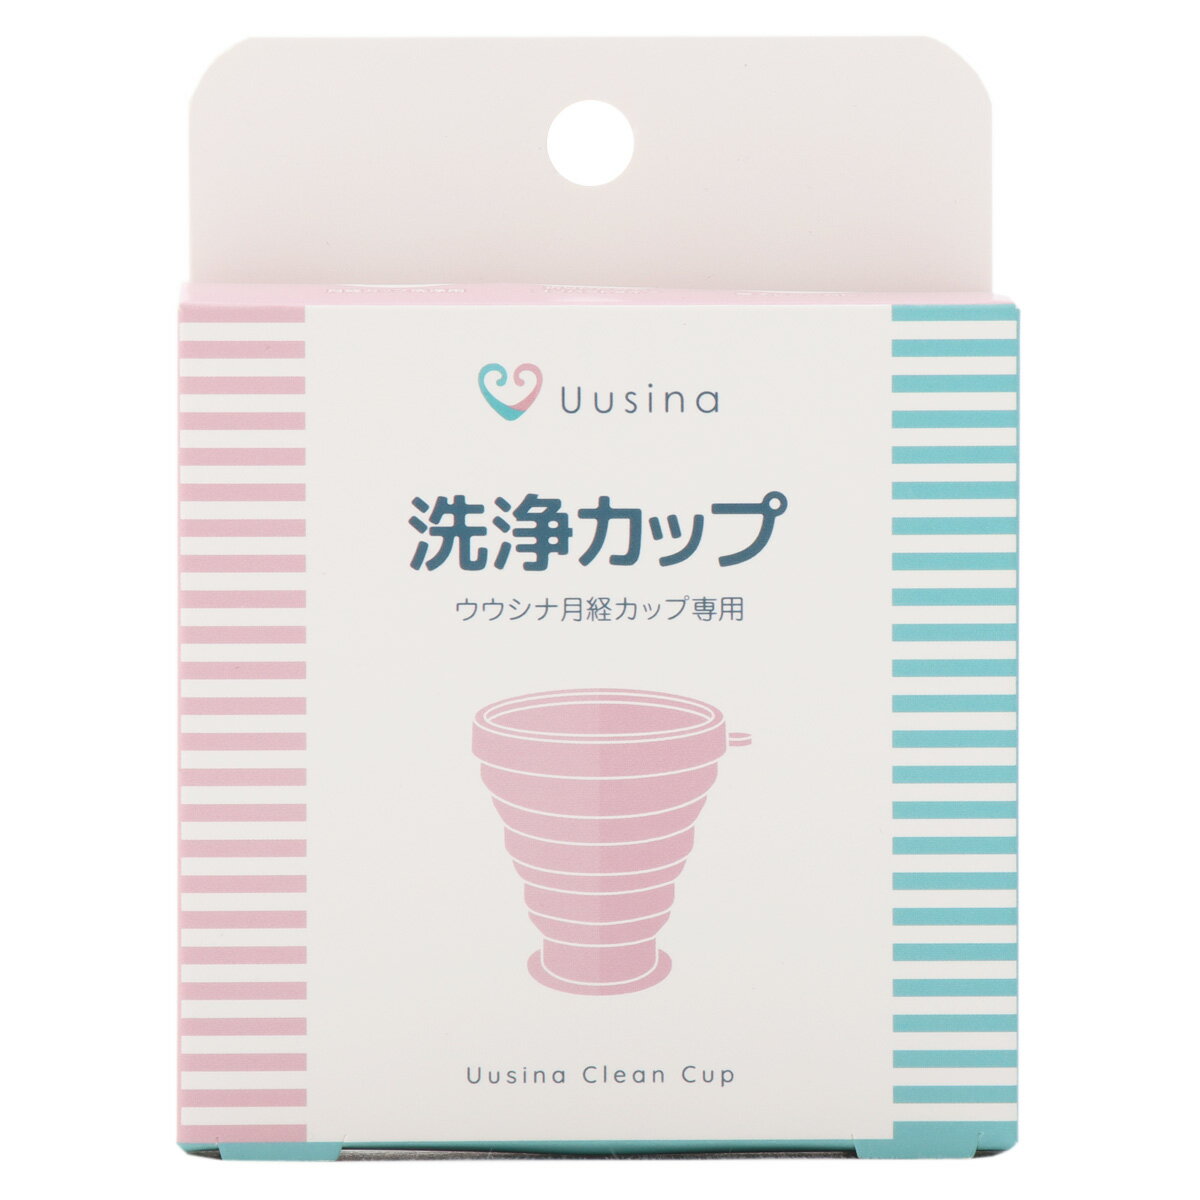 Uusina洗浄カップTallは、月経カップ専用の洗浄シリコンカップです。 折りたためるシリコンカップで、Uusinaカップの消毒や、外出時の交換・洗浄時に便利です。月経カップは、使用の前後にカップをきちんとケアすることが大切です。このシリコンカップがあれば、簡単に清潔に保つことができます。 内容物：本体 材質：シリコン サイズ・重量：（上部）約85mm×（底部）約52mm×（高さ）約88mm、（重量）約72g ご使用方法 (1)折りたたまれた洗浄カップを広げコップ状にしてください。 (2)水を入れ、月経カップを入れて蓋をしてください。 (3)レンジに入れてください。(500W 6分間/600W 5分間) (4)熱が冷めたのを確認し、レンジからクリーンカップを取り出してください。 (5)月経カップを取り出し清潔な布でお湯を拭き取ってください。 ※火傷には十分注意してください。 原産国：中国（日本企画） 広告文責：株式会社フォーワン商事 050-5358-0531